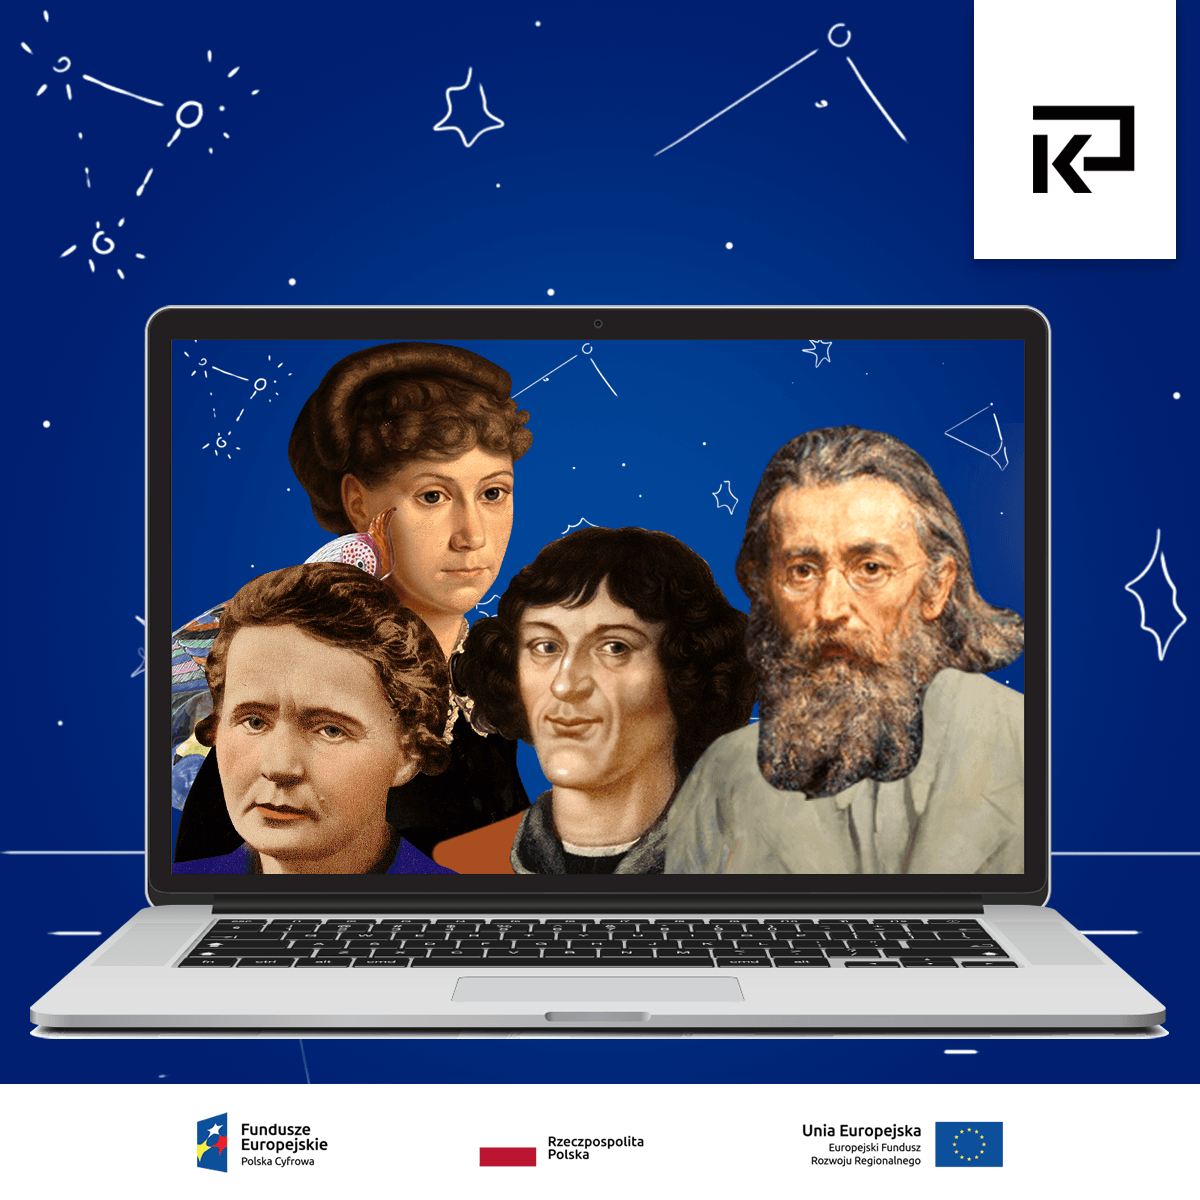 Jak Mikołaj Kopernik łączy technologię, naukę i kulturę?